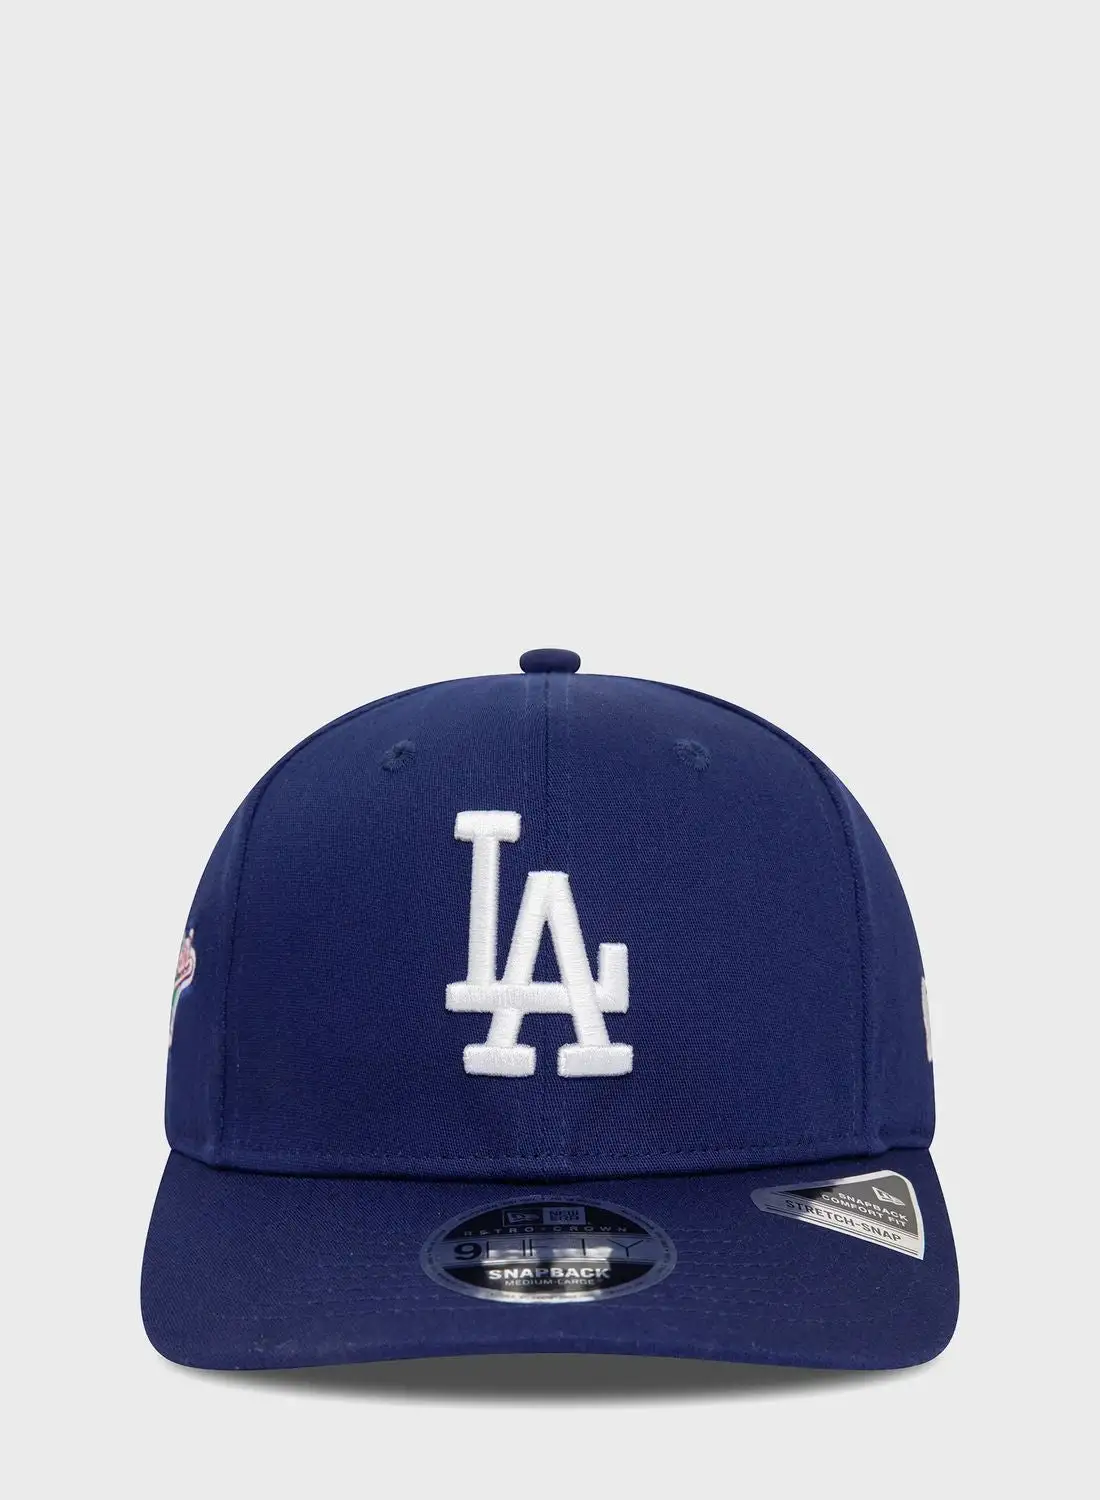 قبعة نيو إيرا 9 فيفتي لوس أنجلوس دودجرز